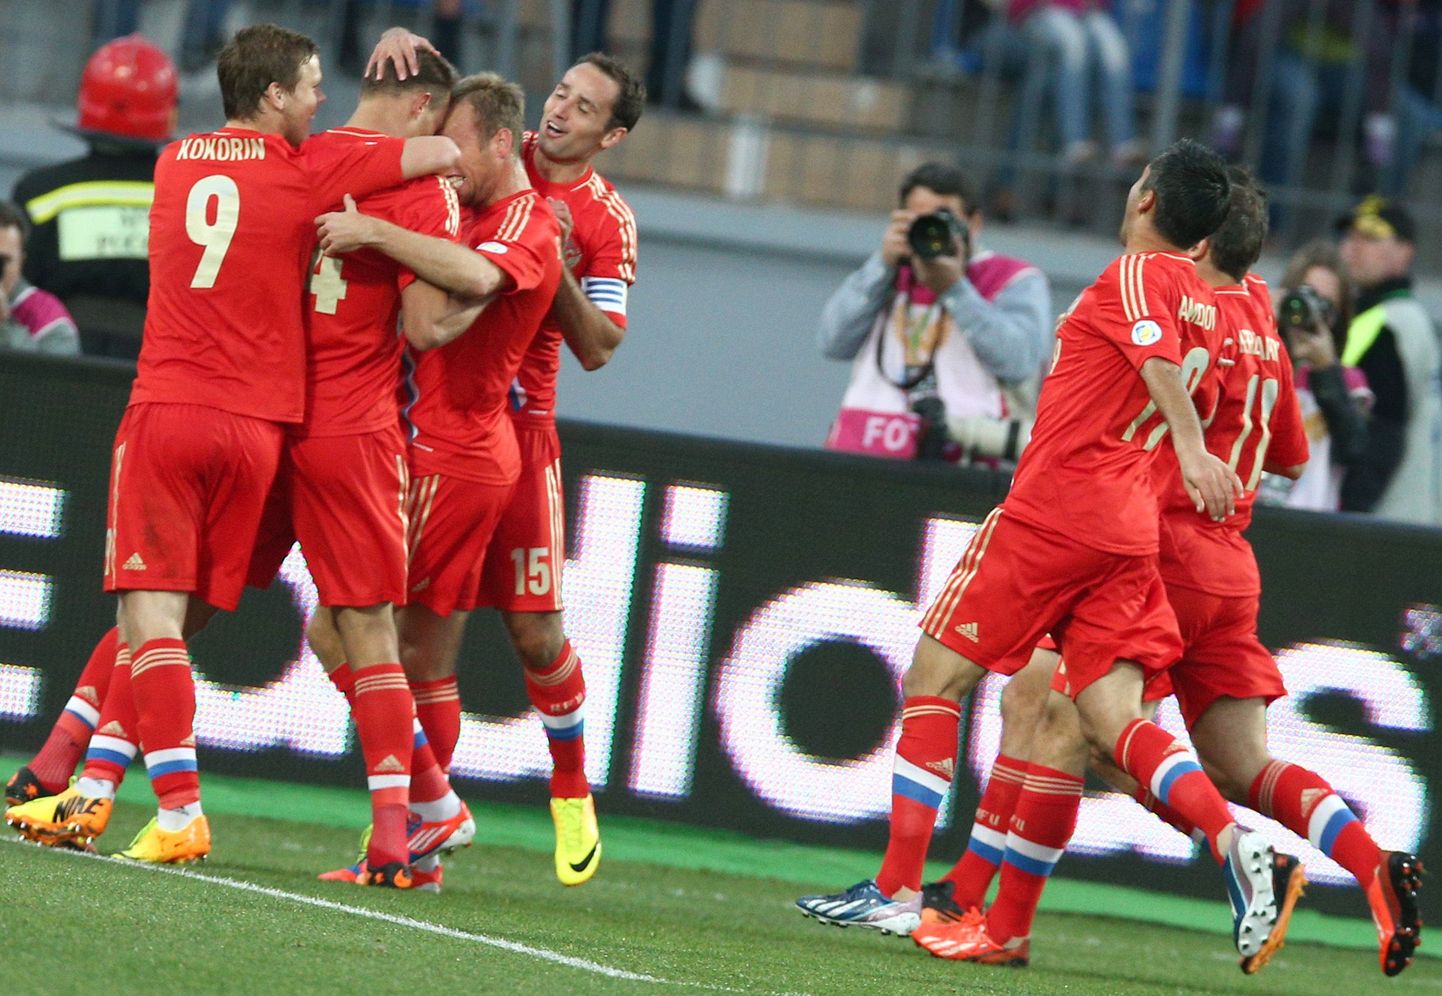 Venemaa mängijad väravat tähistamas.